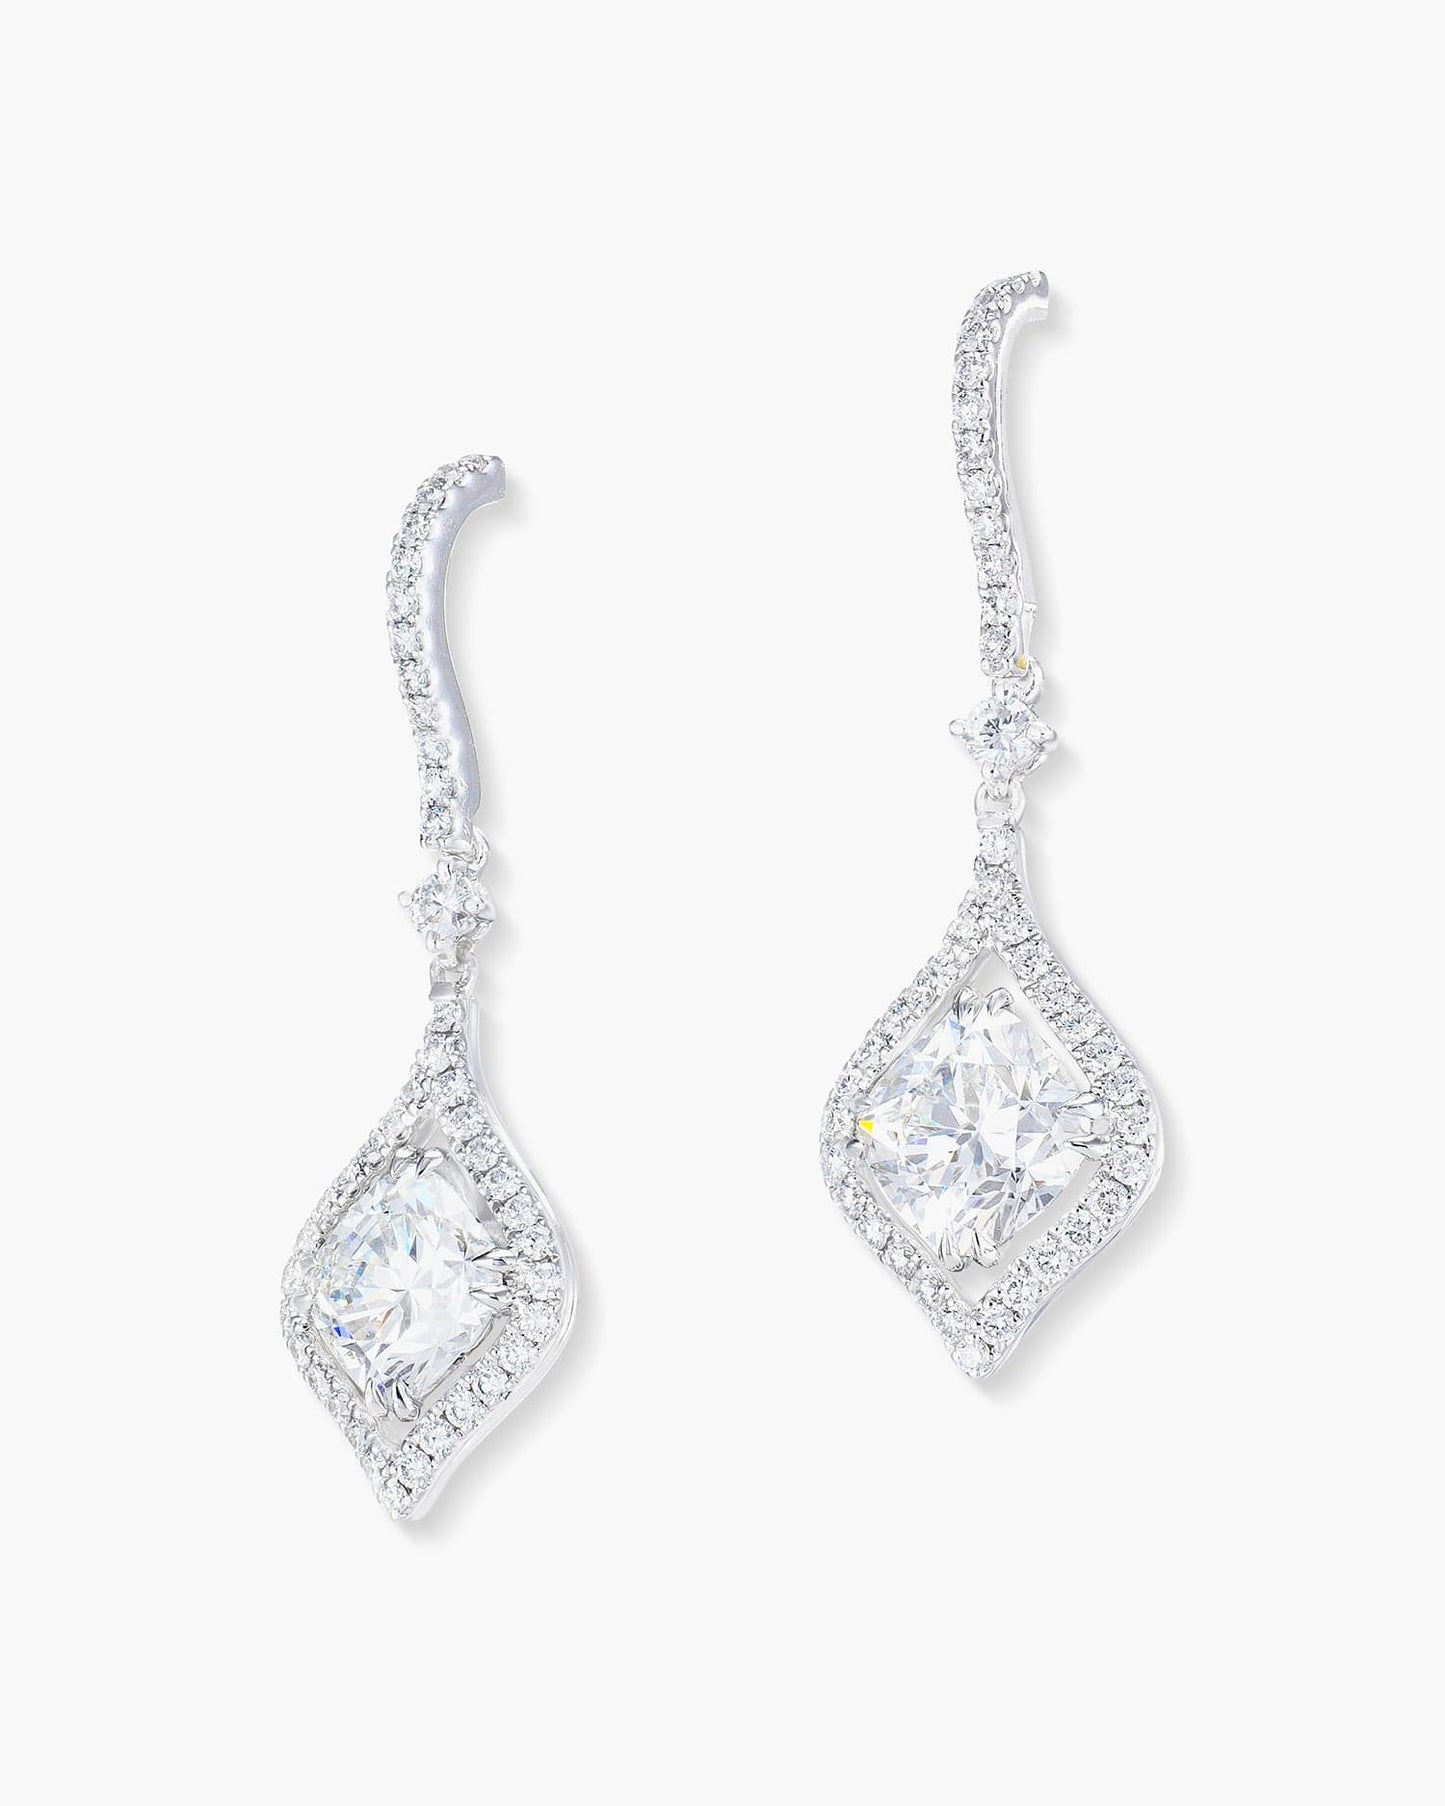 2.11 carat Cushion Cut Diamond Earrings